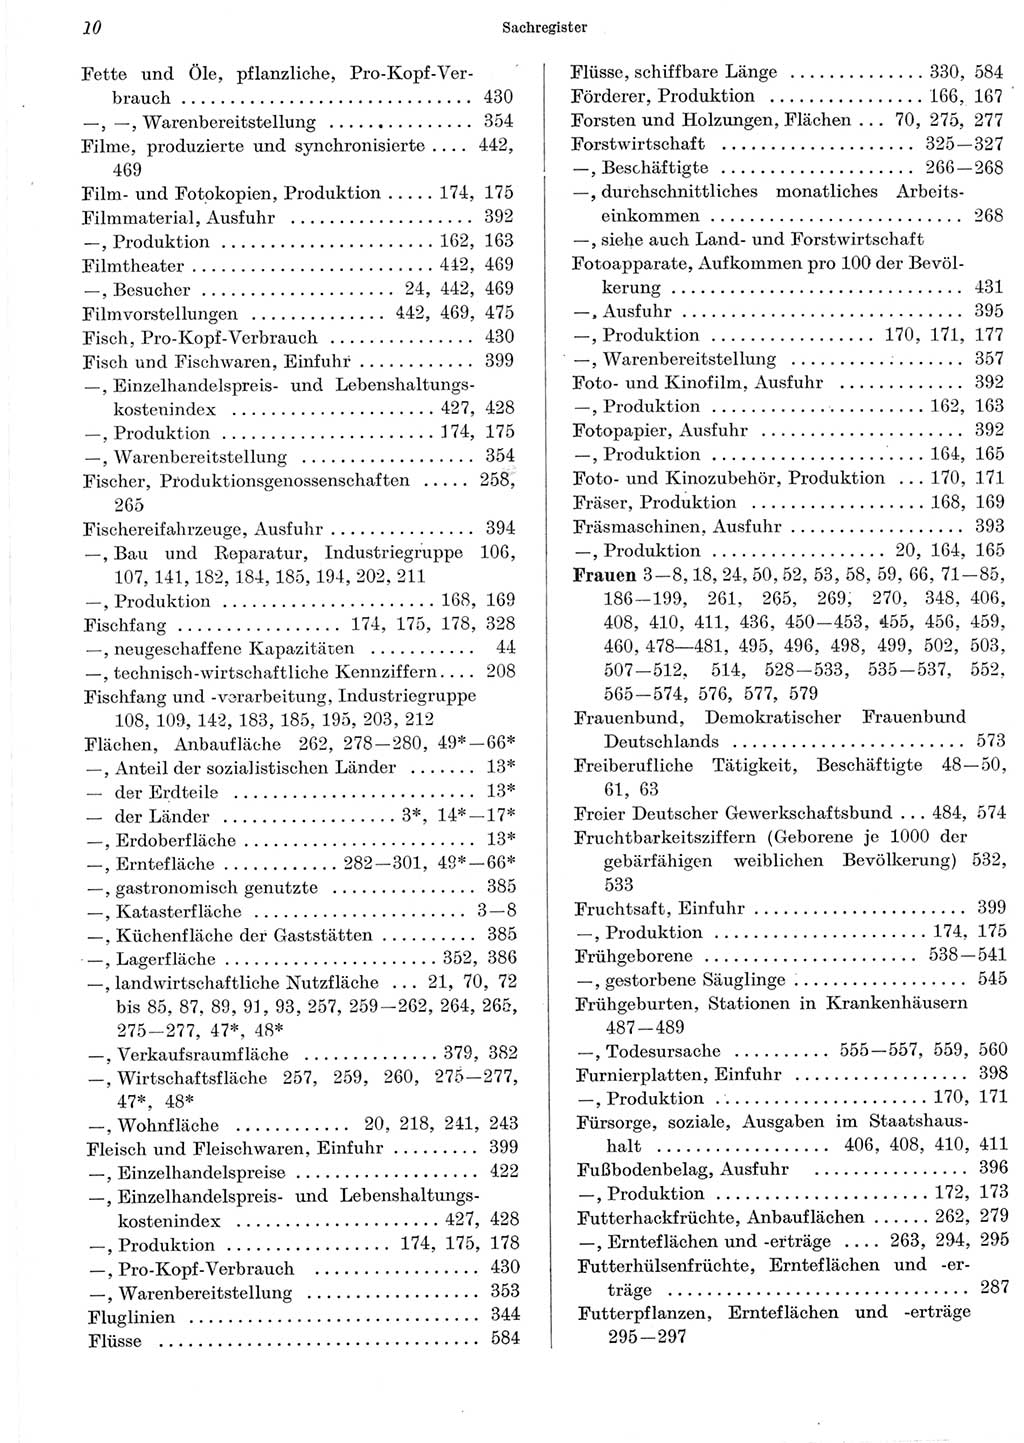 Statistisches Jahrbuch der Deutschen Demokratischen Republik (DDR) 1965, Seite 10 (Stat. Jb. DDR 1965, S. 10)